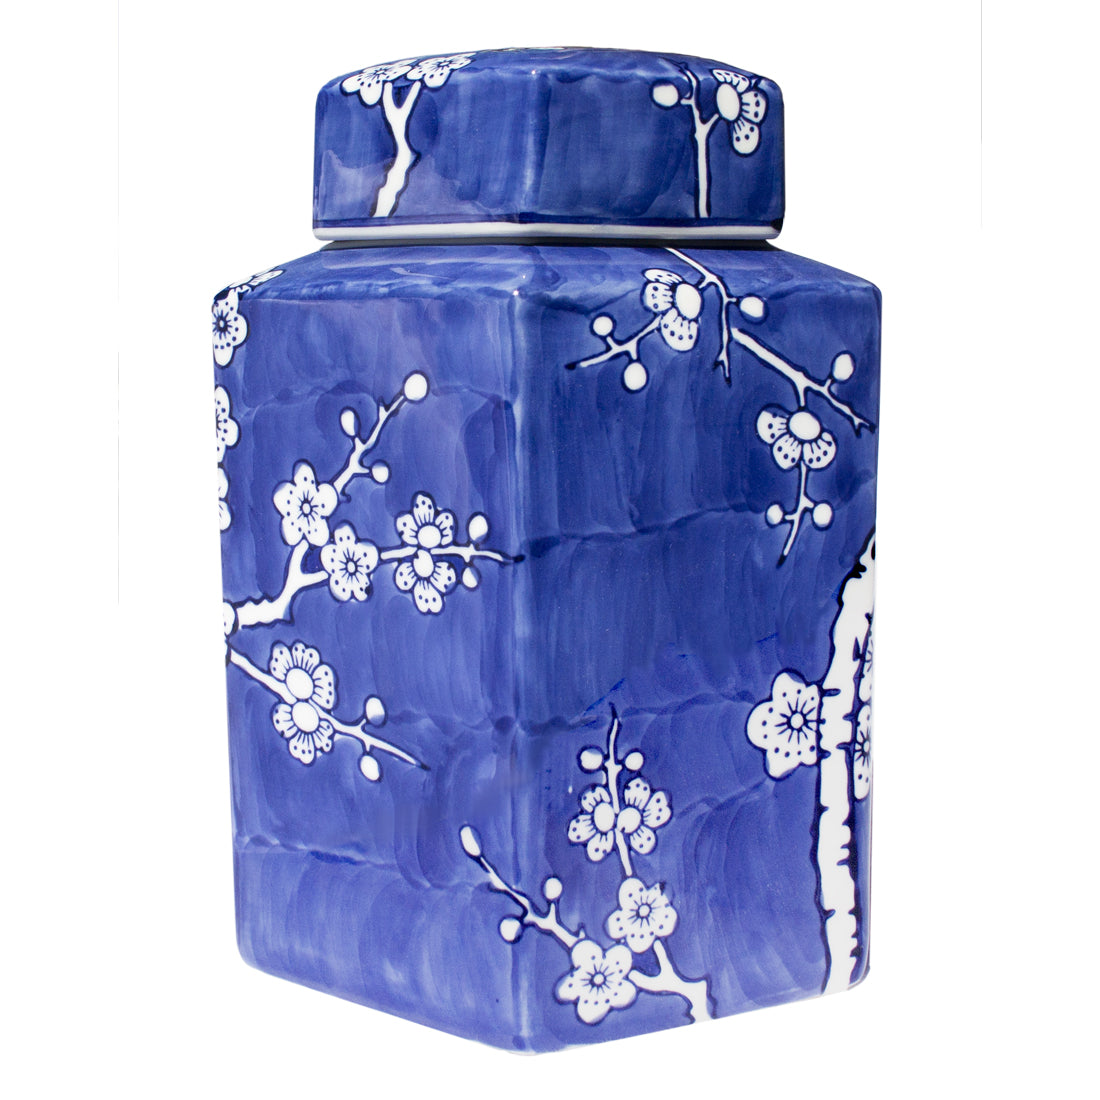 Hand-painted Porcelain Jar - Blue & White Cherry Blossom - Hexagon - Original Source